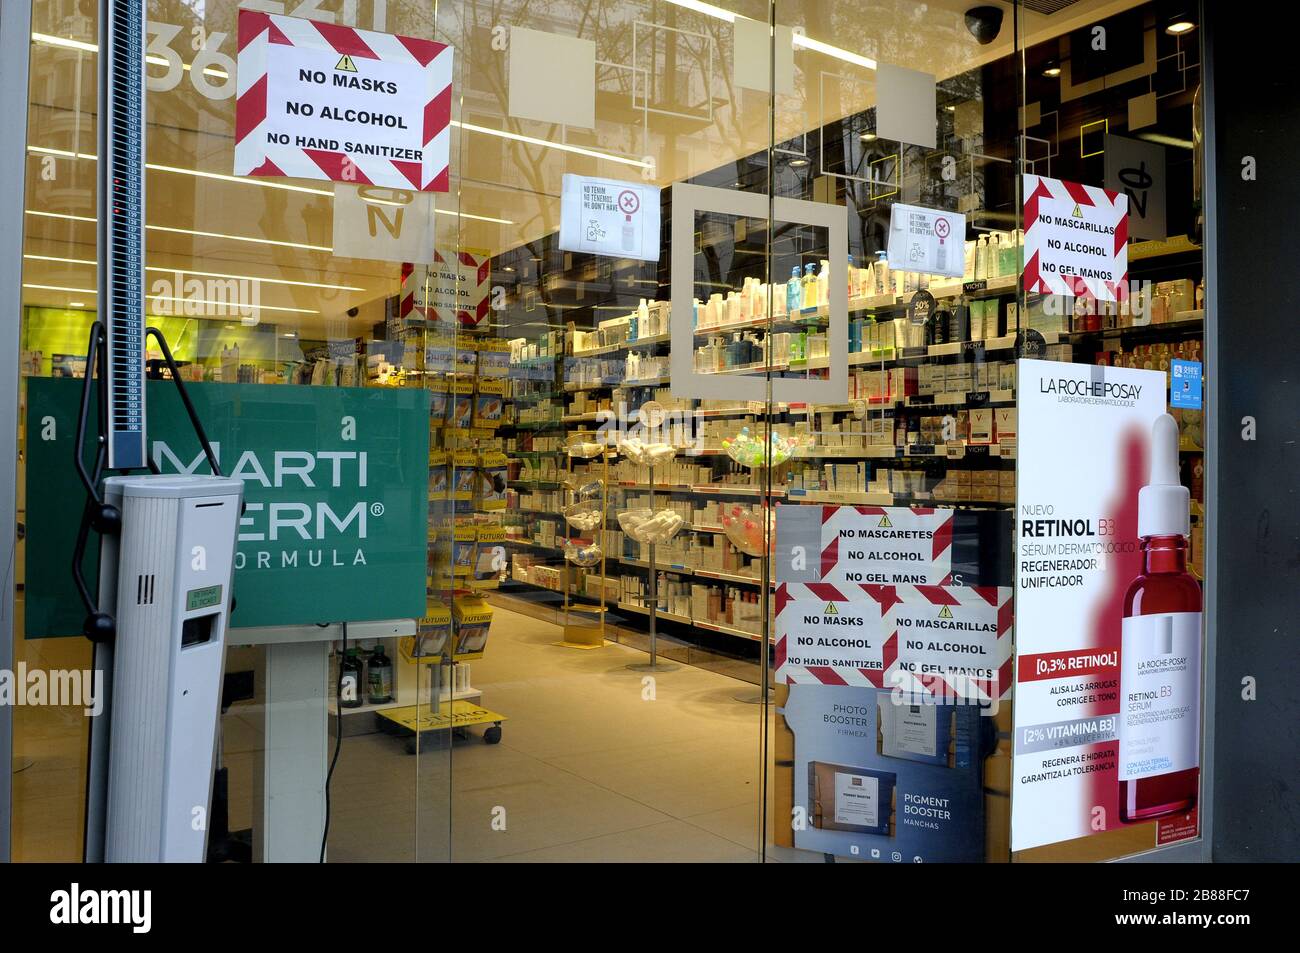 Pharmacie avec des avertissements de non marques, pas de liquide désinfectant, pas d'alcool, Las Ramblas Barcelone Espagne Banque D'Images